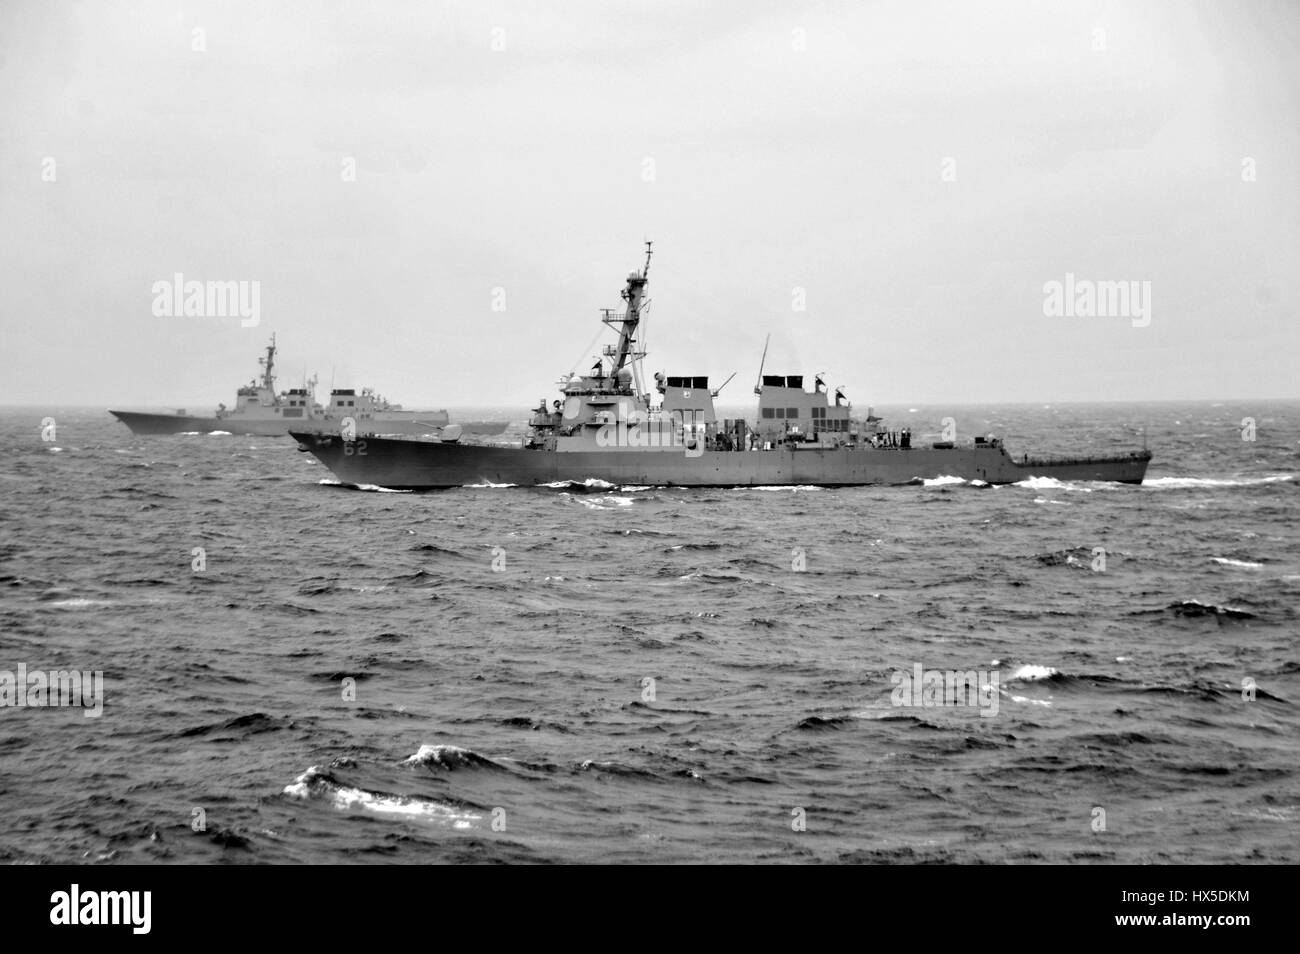 Arleigh Burke-class guidato-missile destroyer USS Fitzgerald (DDG 62) conduce manovre tattiche con una nave dalla Repubblica di Corea marina, ad est della penisola coreana, 2013. Immagine cortesia Ricardo R. Guzman/US Navy. Foto Stock